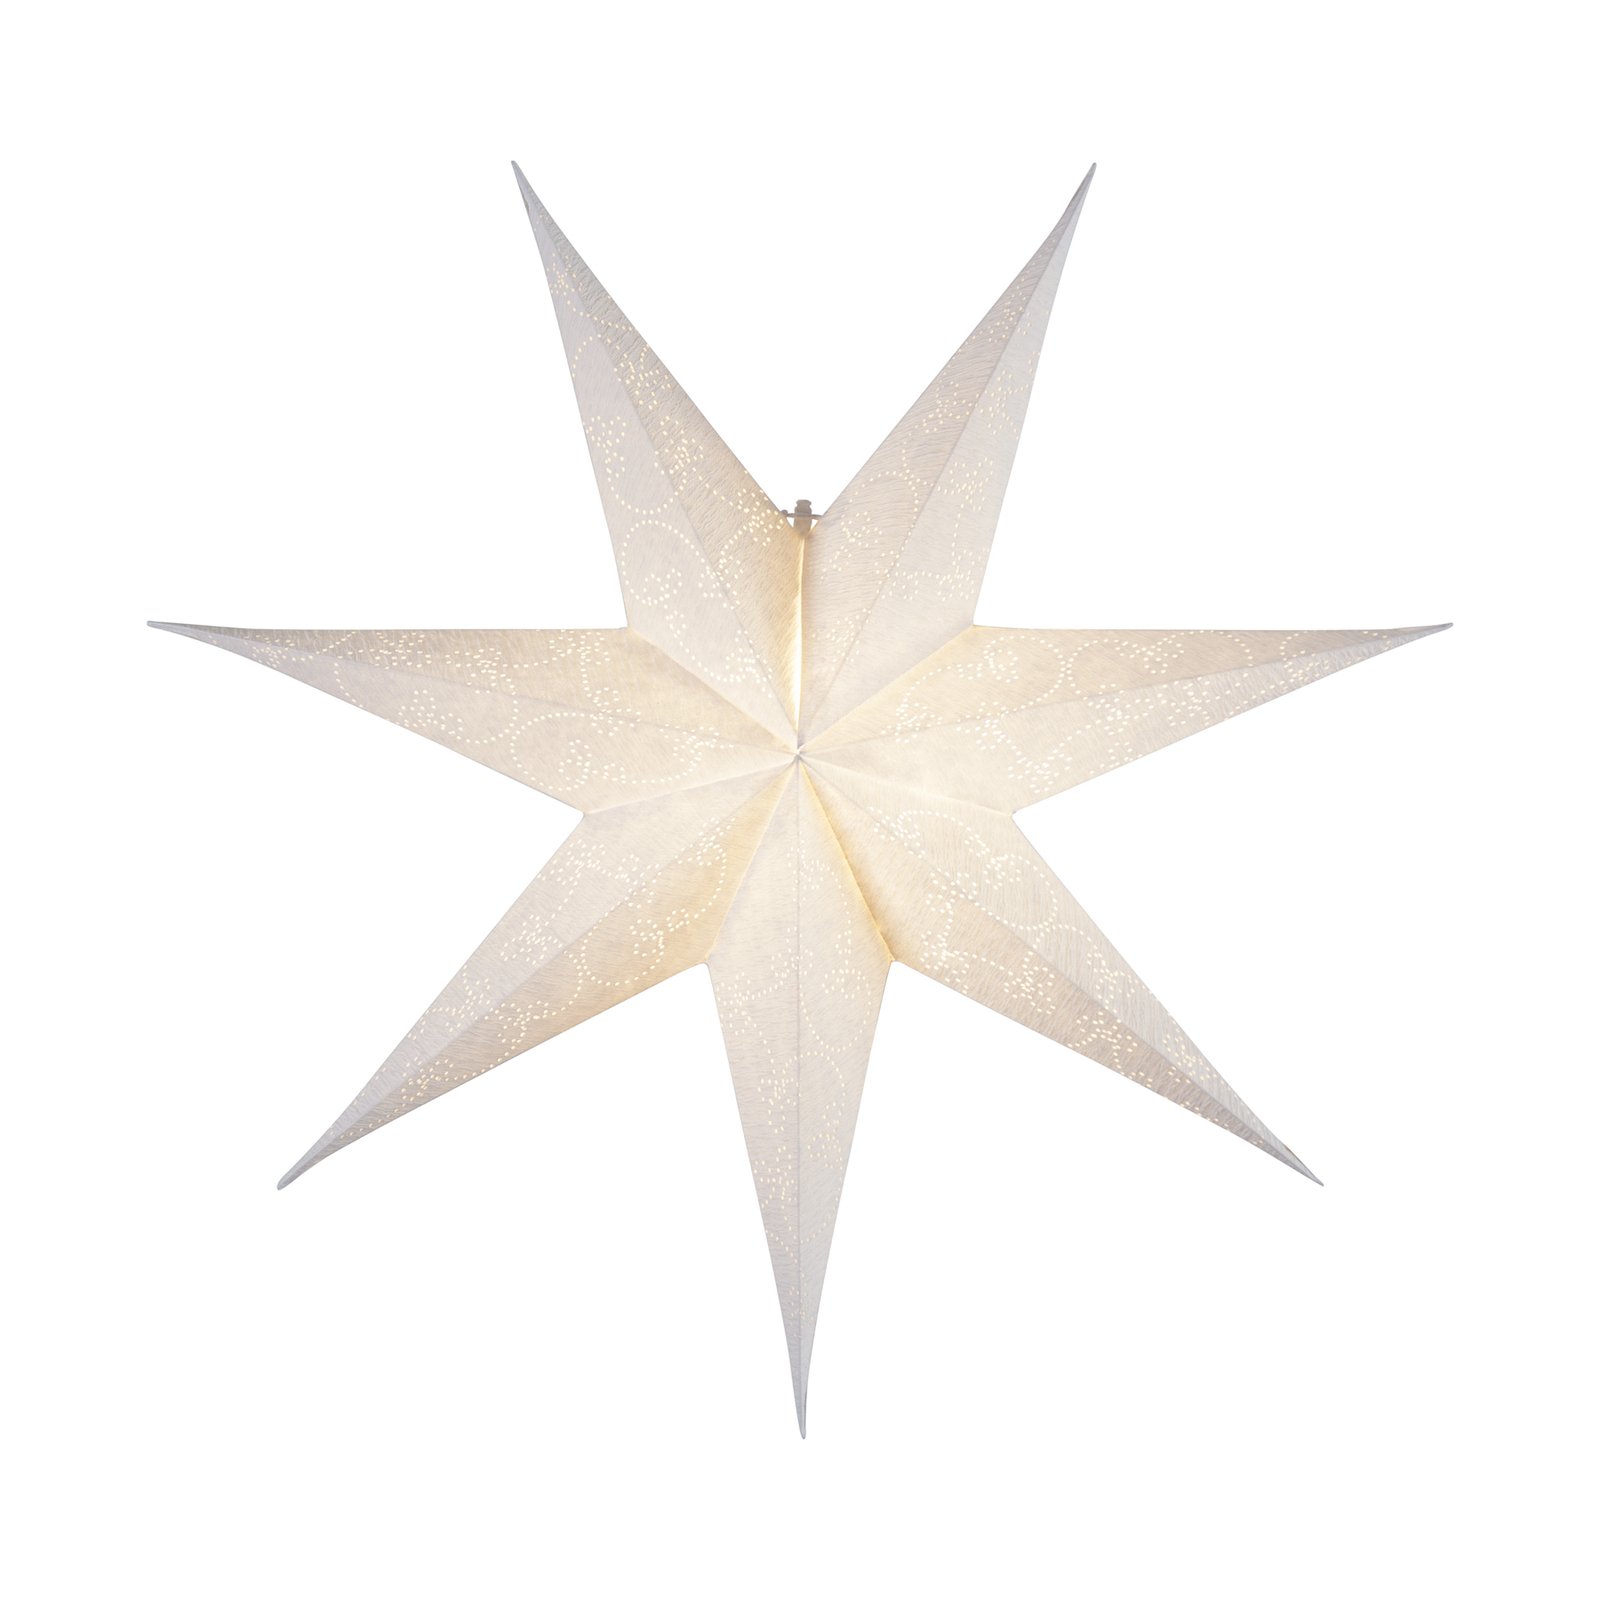 Papírcsillag Decorus világítás nélkül fehér/ezüst